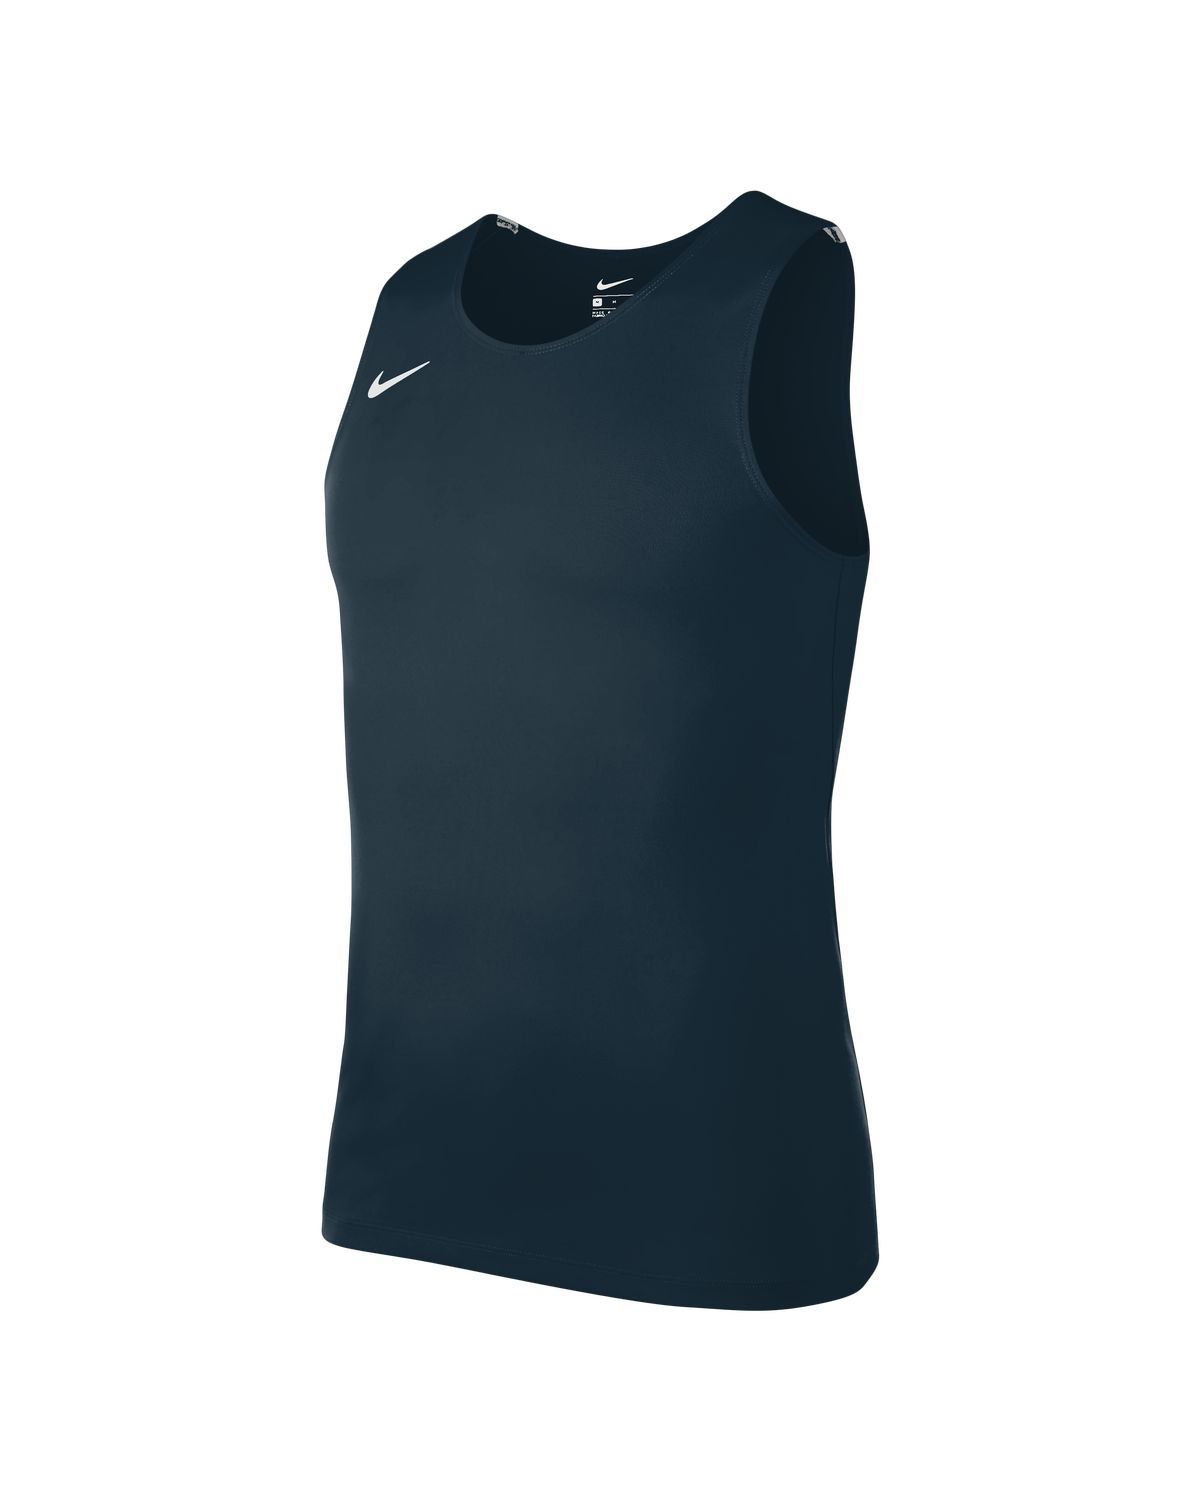 Débardeur Nike Muscle Stock pour Homme - NT0306-451 - Bleu Marine